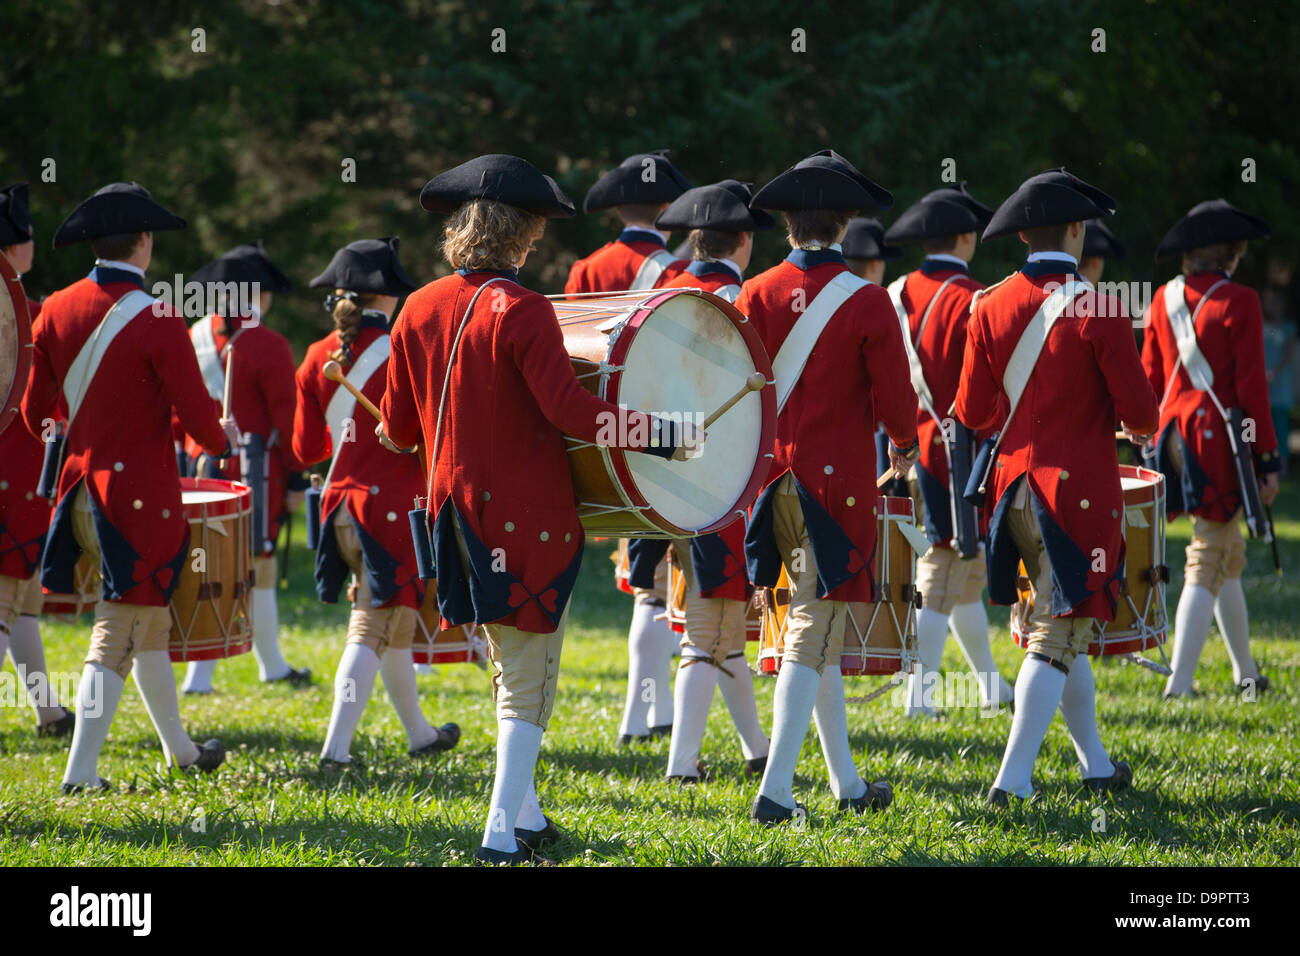 Reconstitution de la guerre révolutionnaire à Colonial Williamsburg, Virginia, USA Banque D'Images